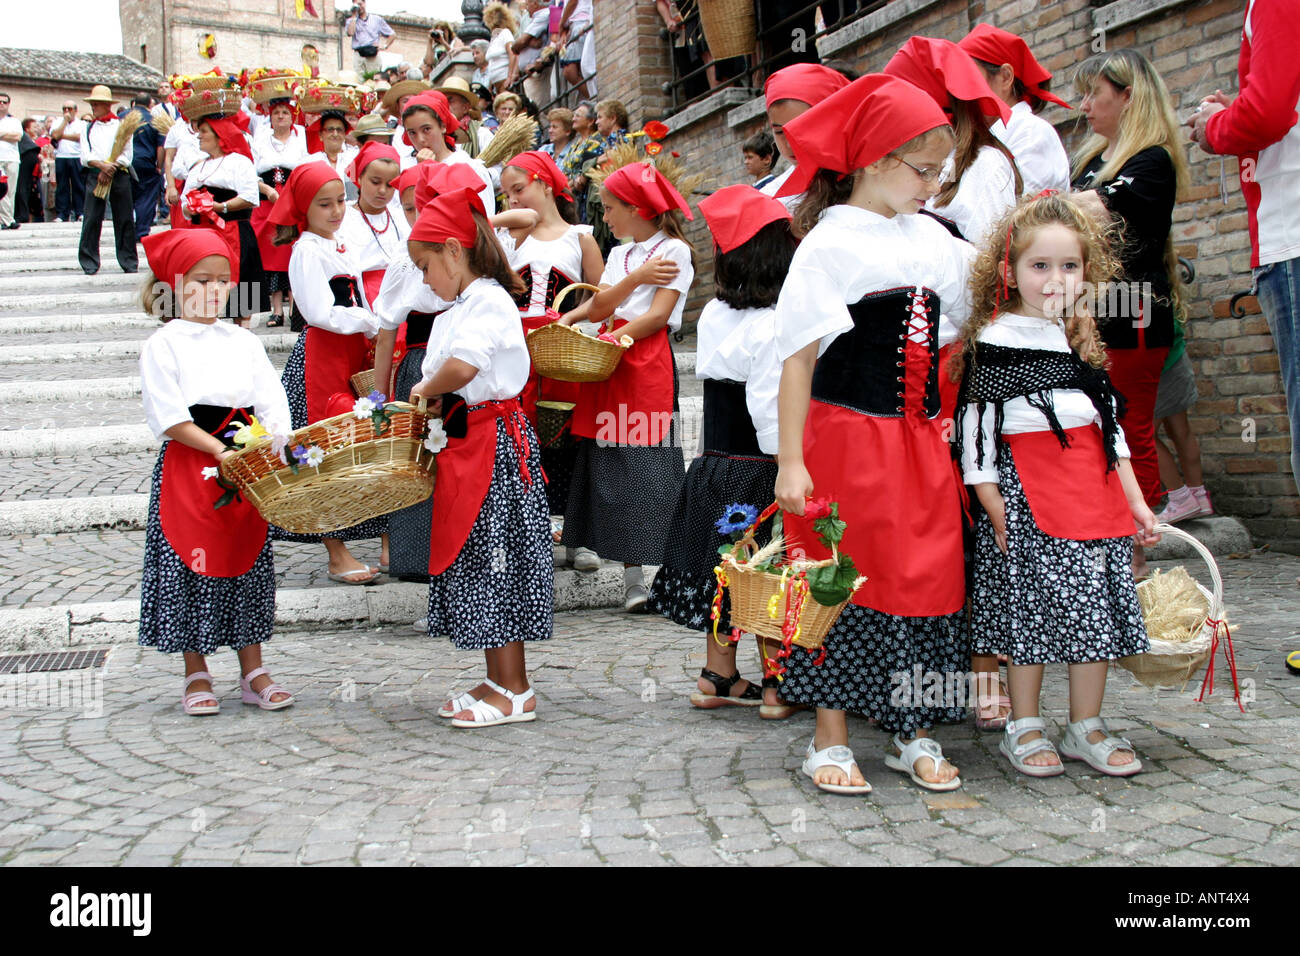 The annual colorful  traditional  religious ","Festa de Canestralle", ,festival  in Amandola, Le Marche, Italy Stock Photo